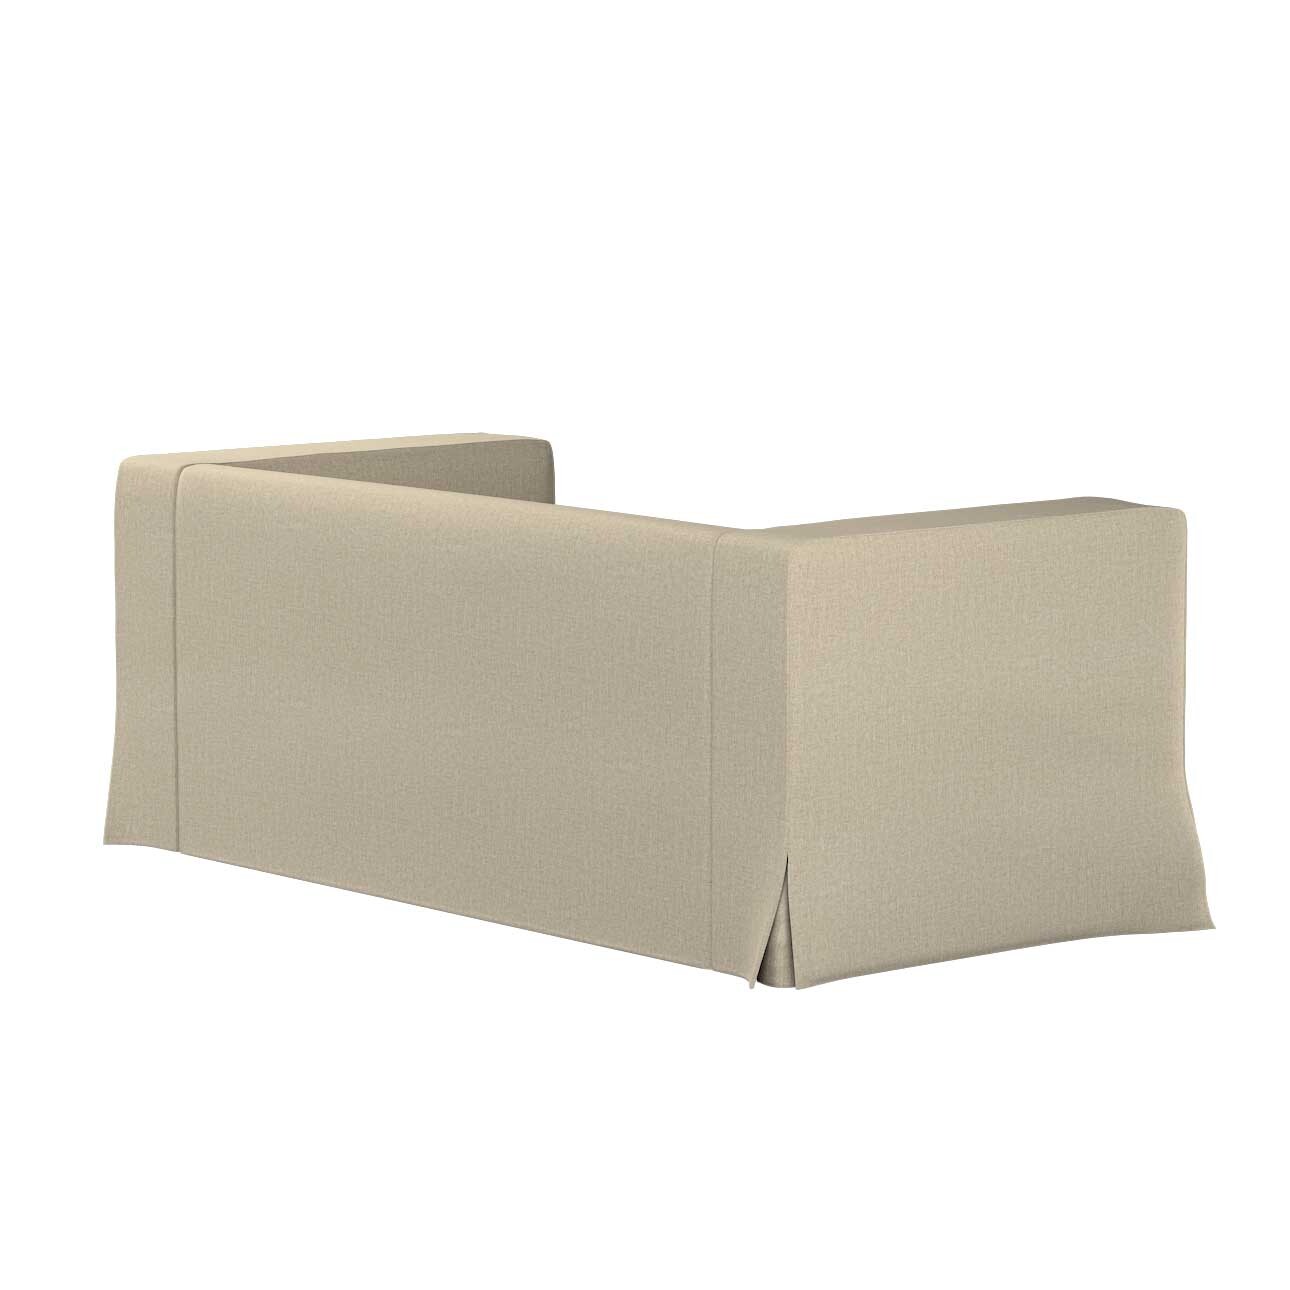 Bezug für Klippan 2-Sitzer Sofa, lang mit Kellerfalte, beige- grau, Klippan günstig online kaufen